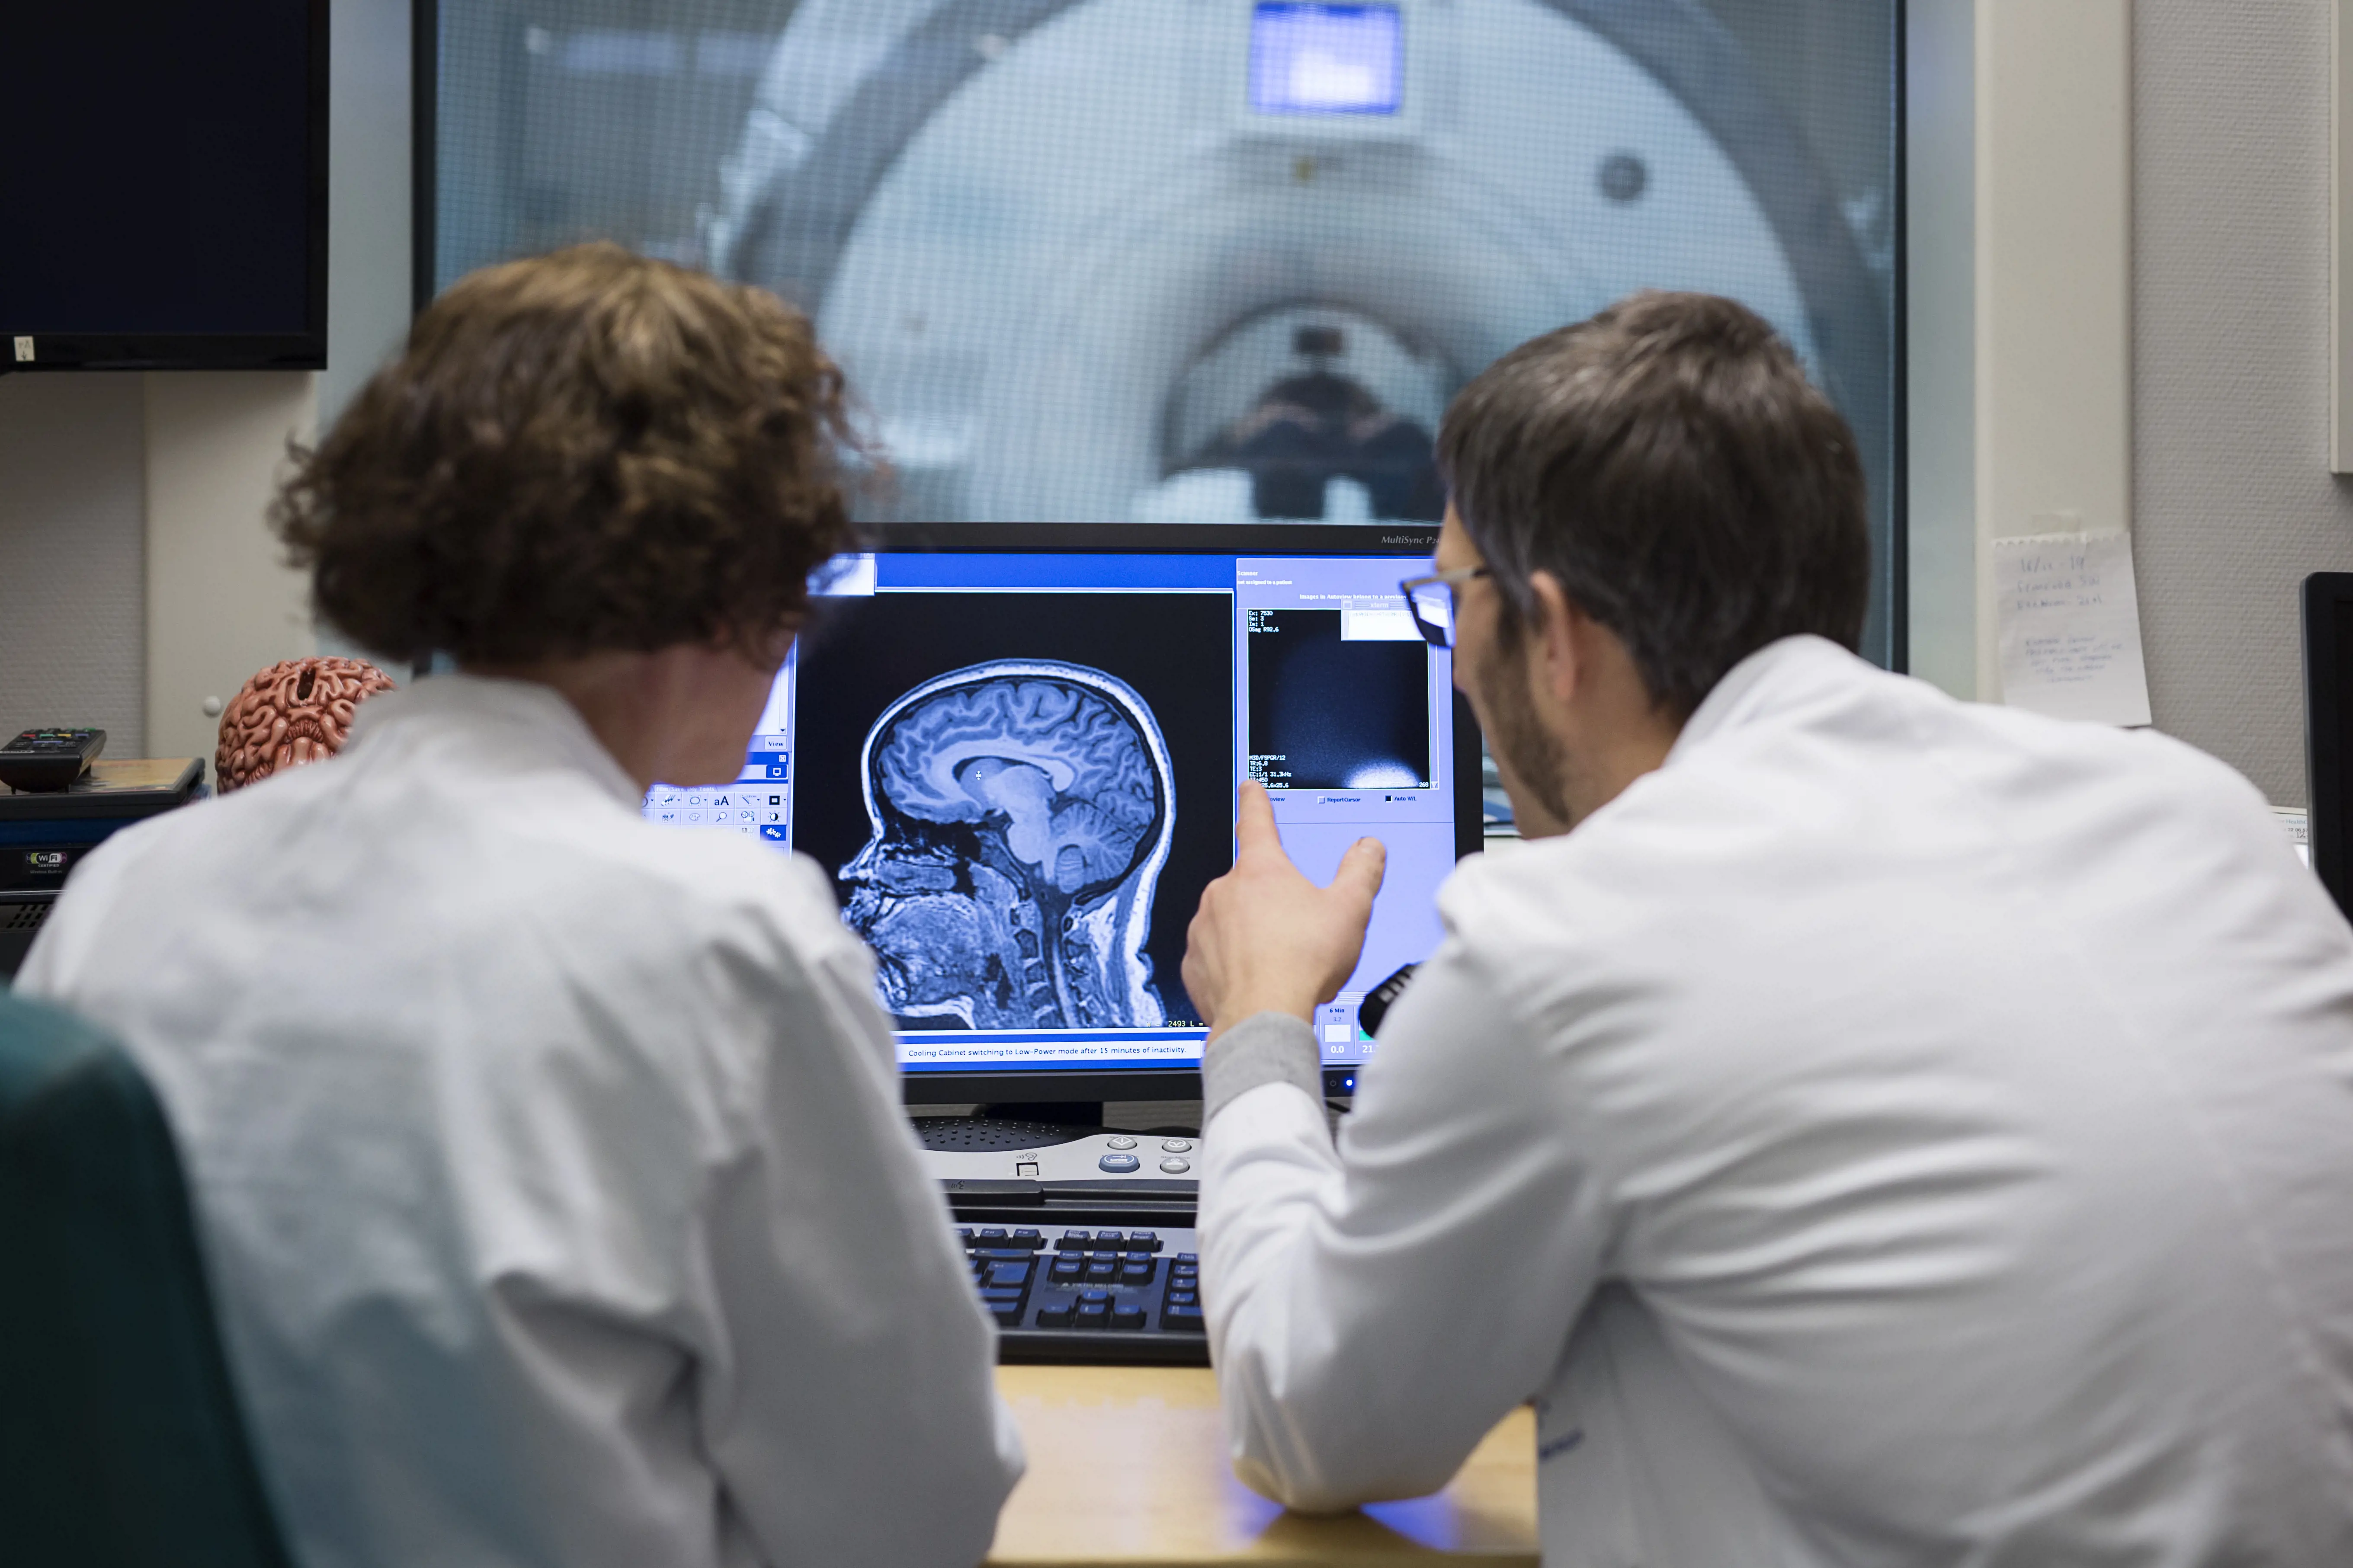 Foto:To ansatte sitter og ser på en skjerm som viser røntgenbilde av hodet